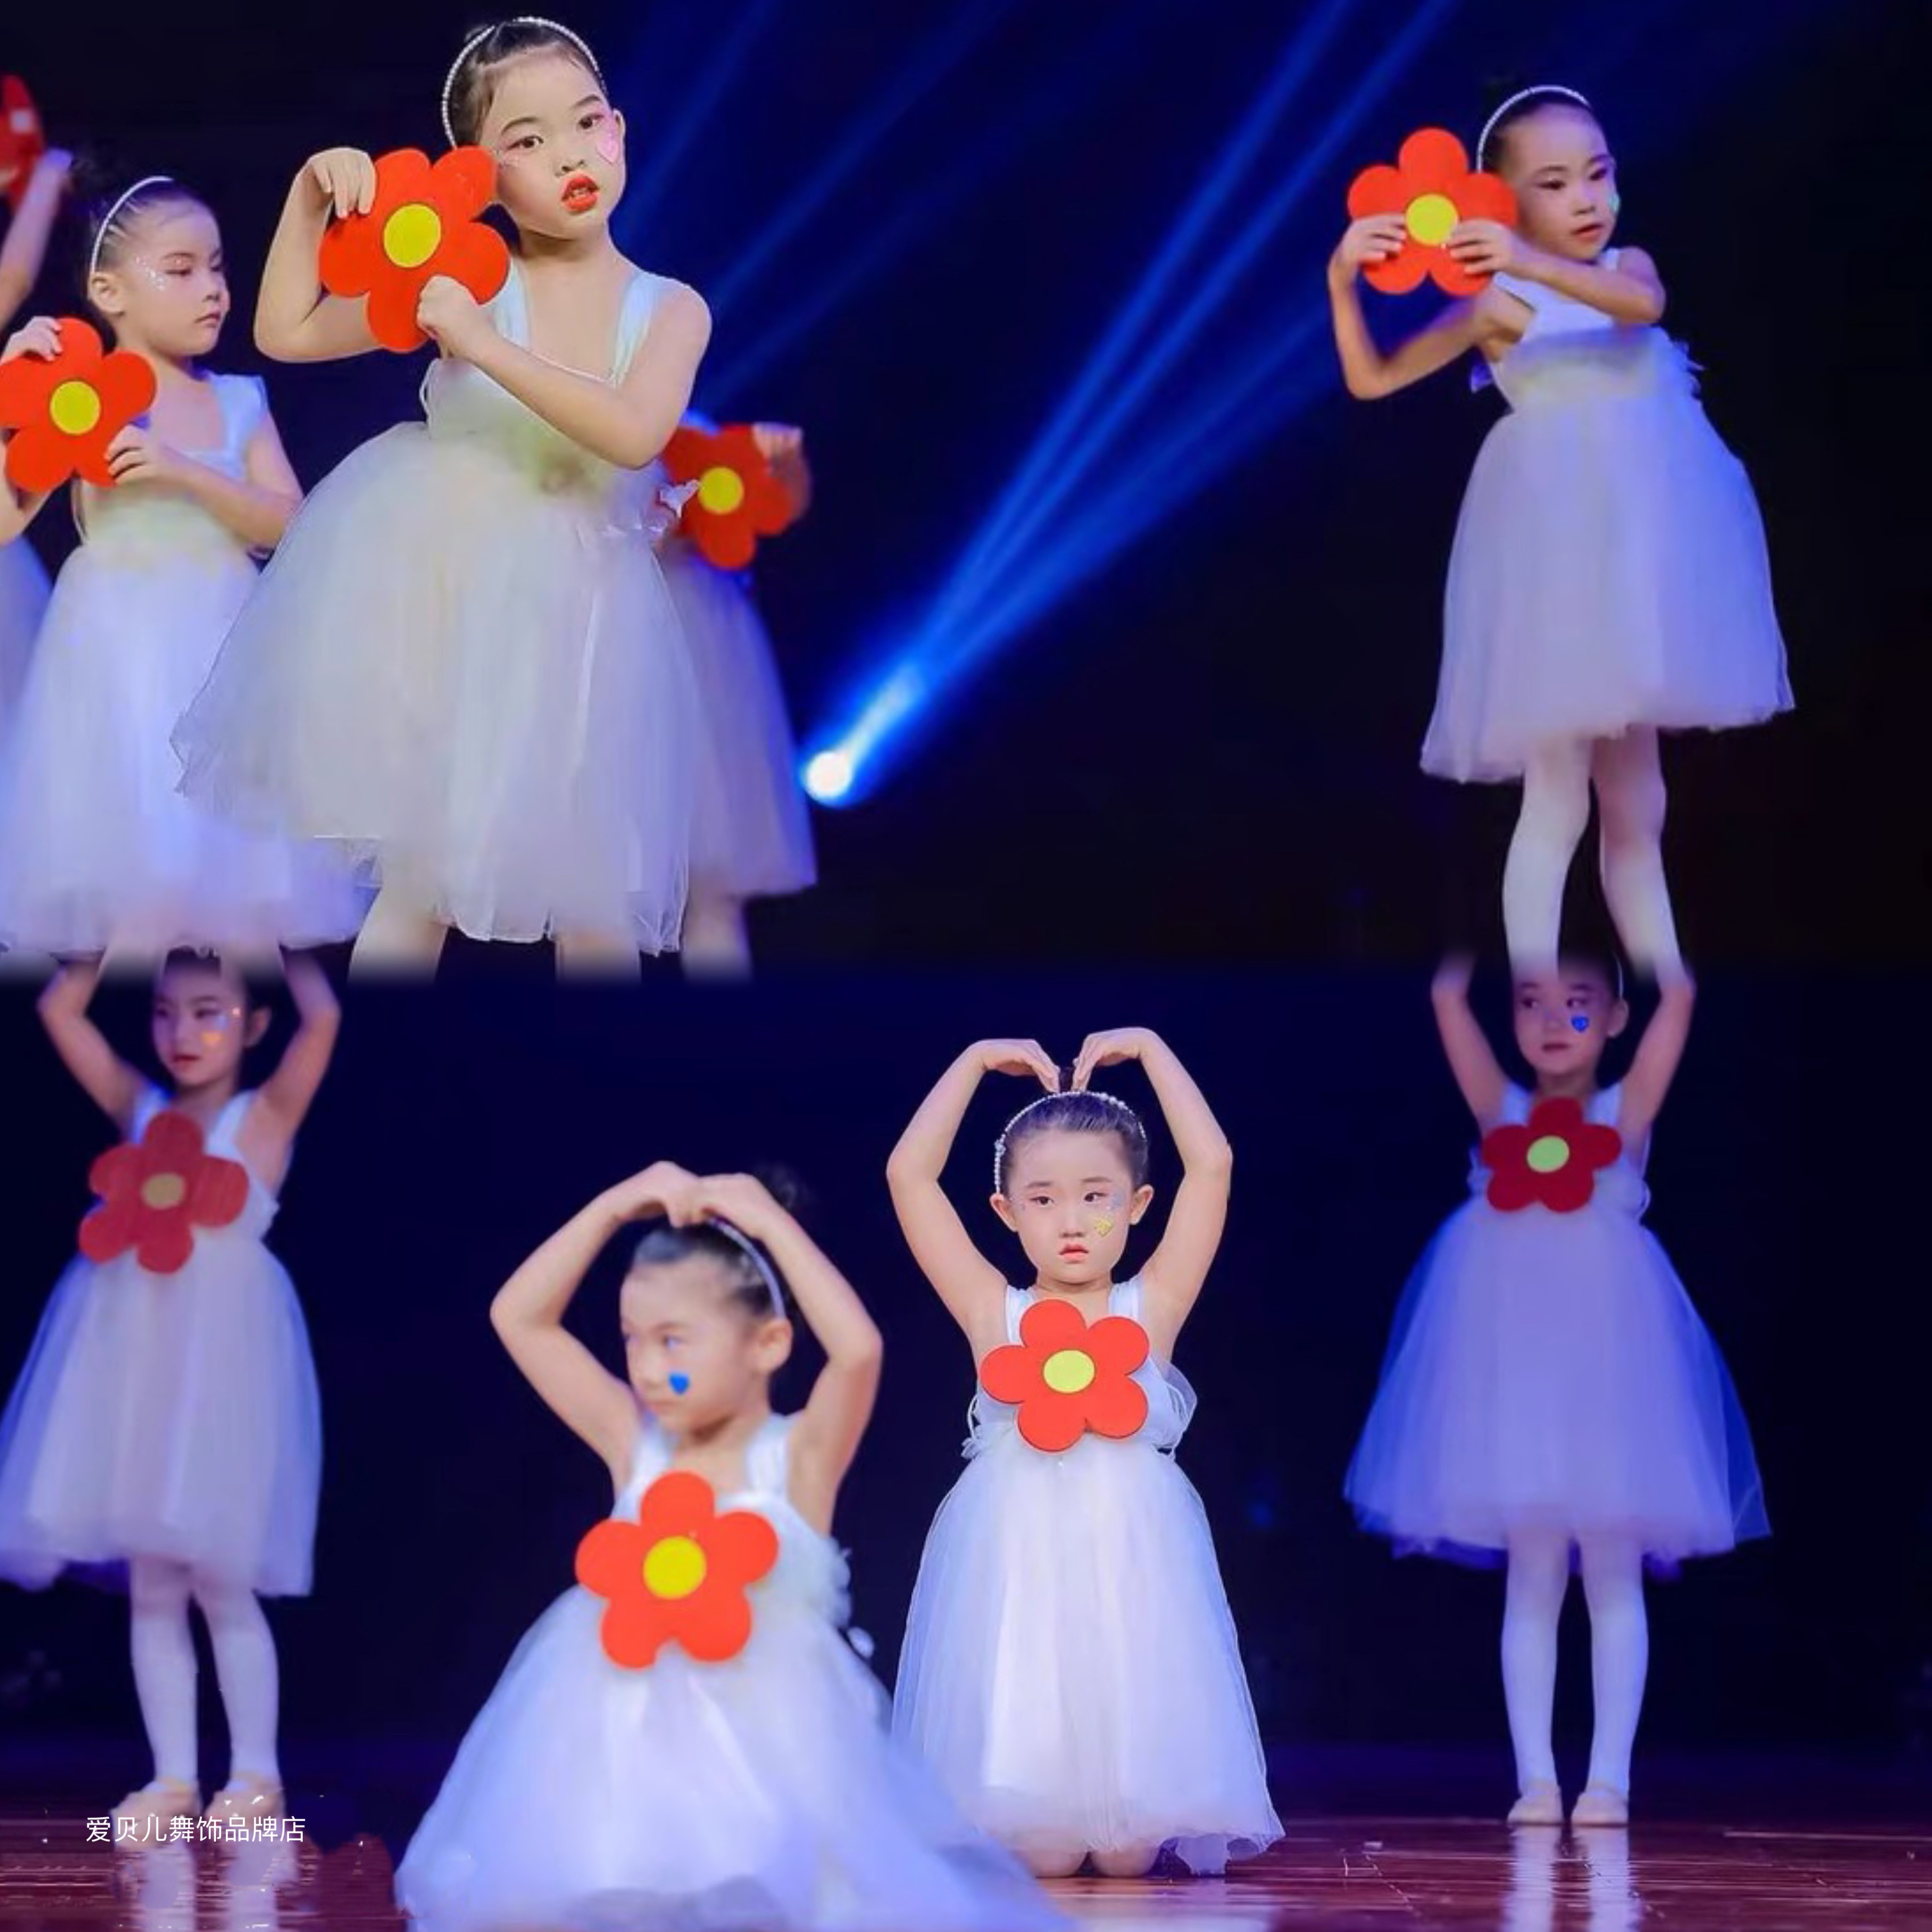 新款儿童白色蓬蓬纱裙送你一朵小红花演出服幼儿园舞蹈表演服女童